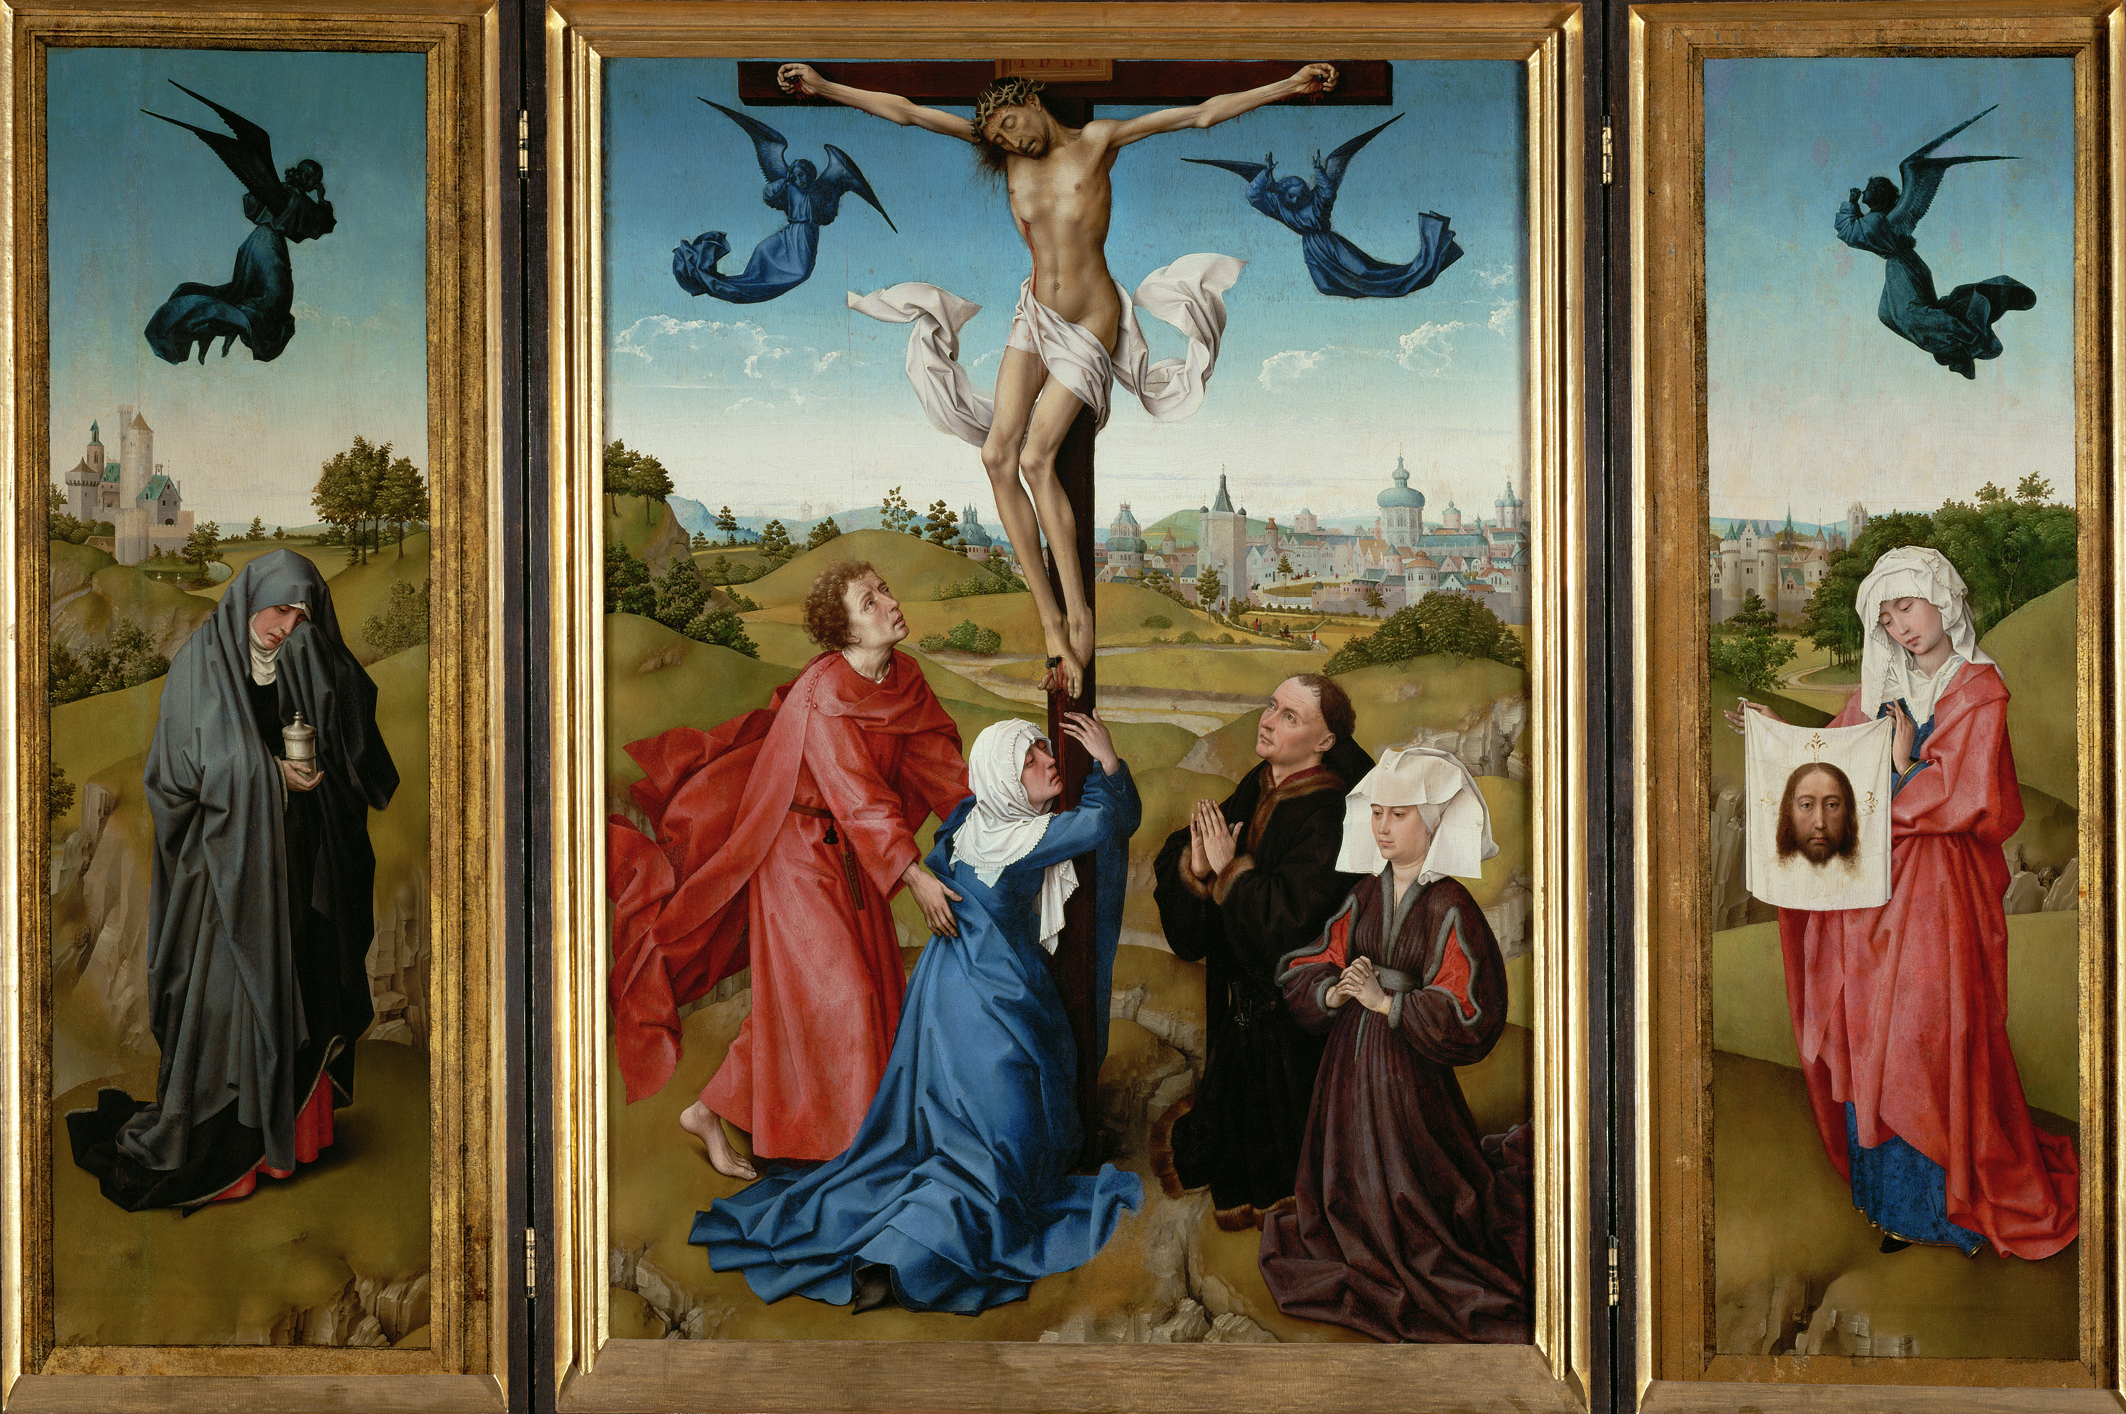 Τρίπτυχο: Η Σταύρωση by Rogier van der Weyden - 1443/45 - κεντρικό πάνελ: 96 x 69 cm,side wings: 101 x 35 cm each 